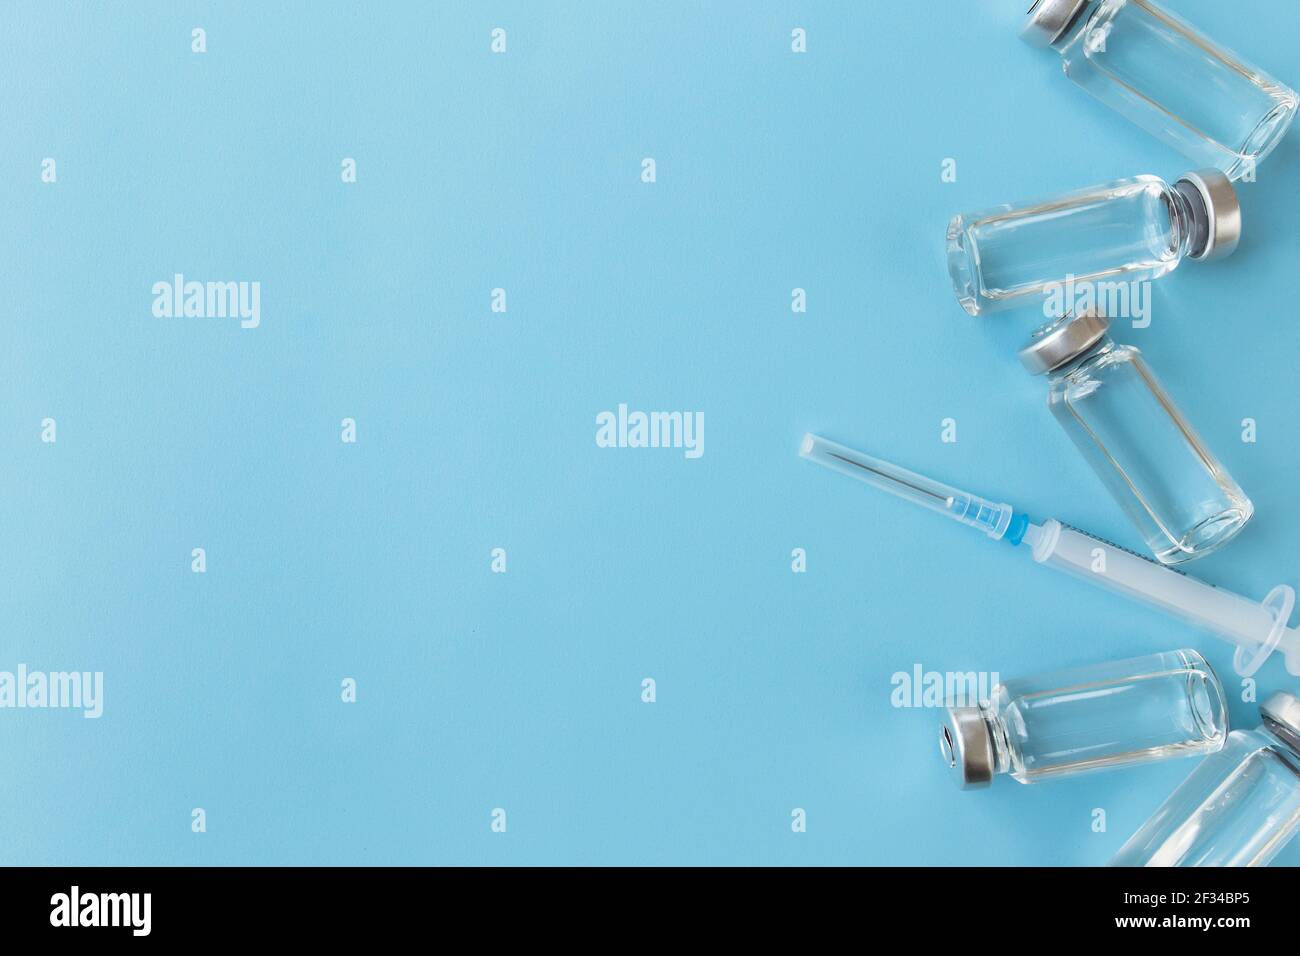 Trattamento medico, concetto di vaccinazione. Flaconi con vaccino, antibiotico, iniezione, siringa su sfondo blu. Foto di alta qualità Foto Stock